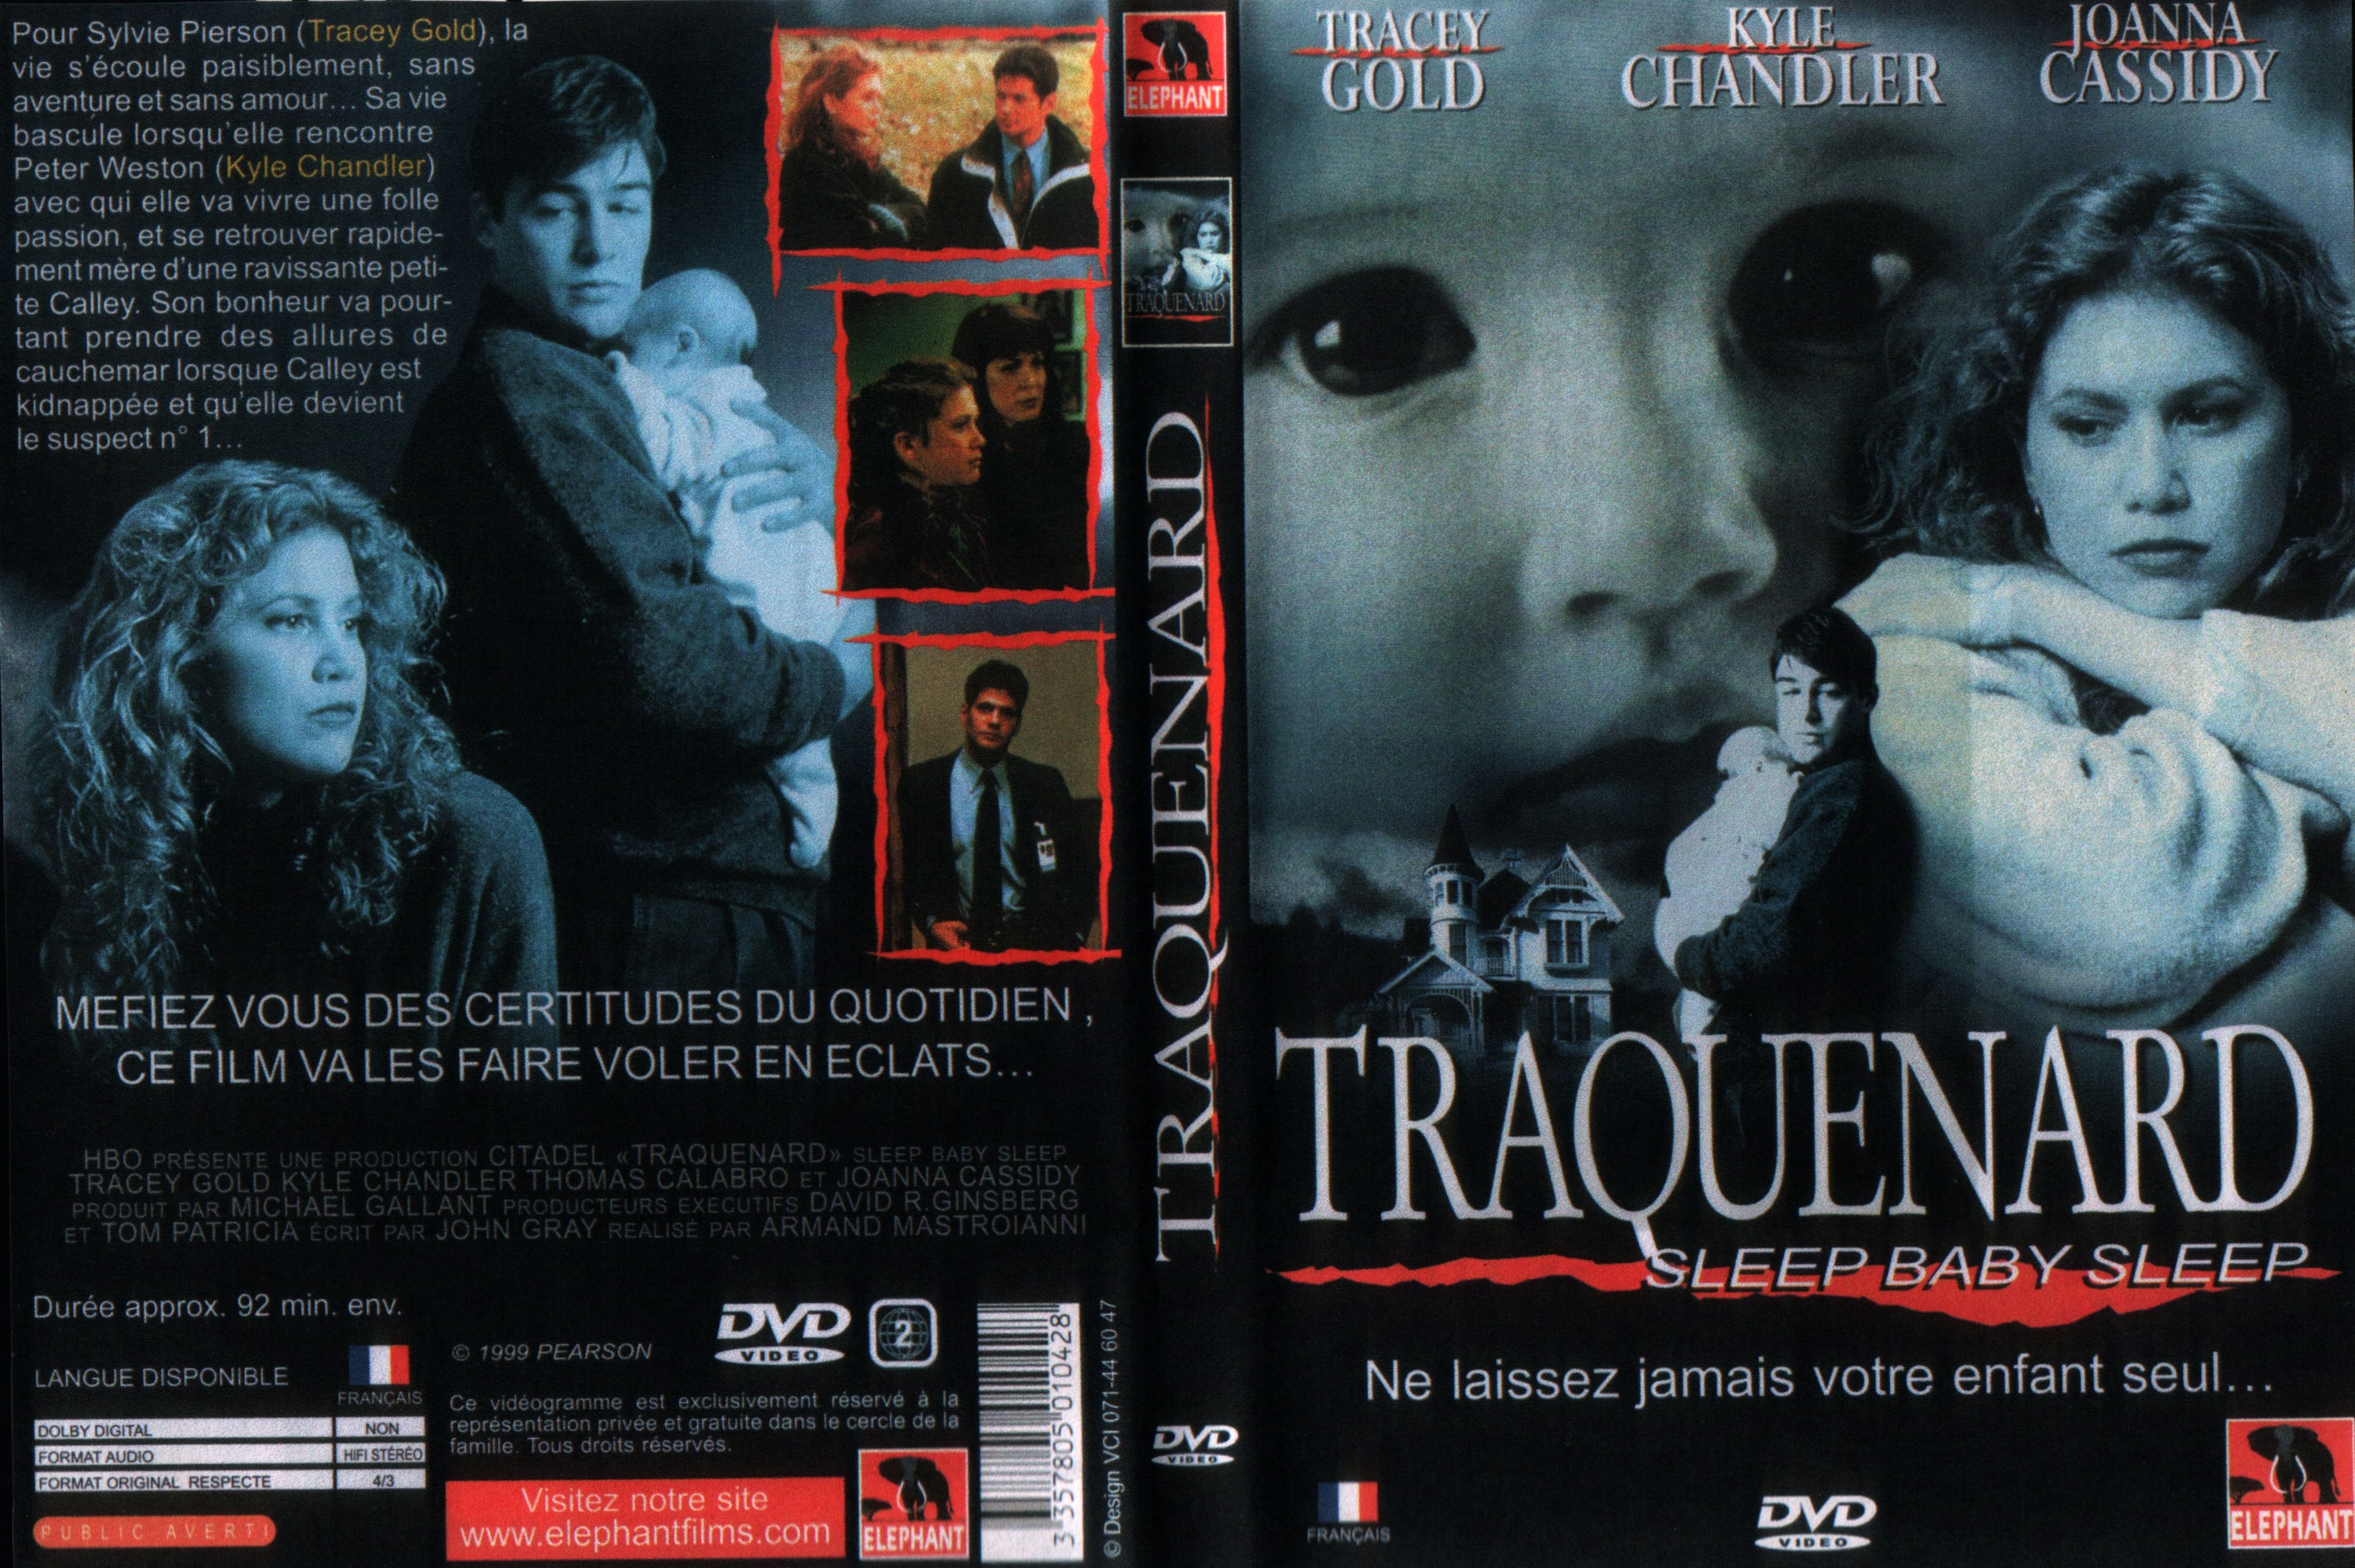 Jaquette DVD Traquenard